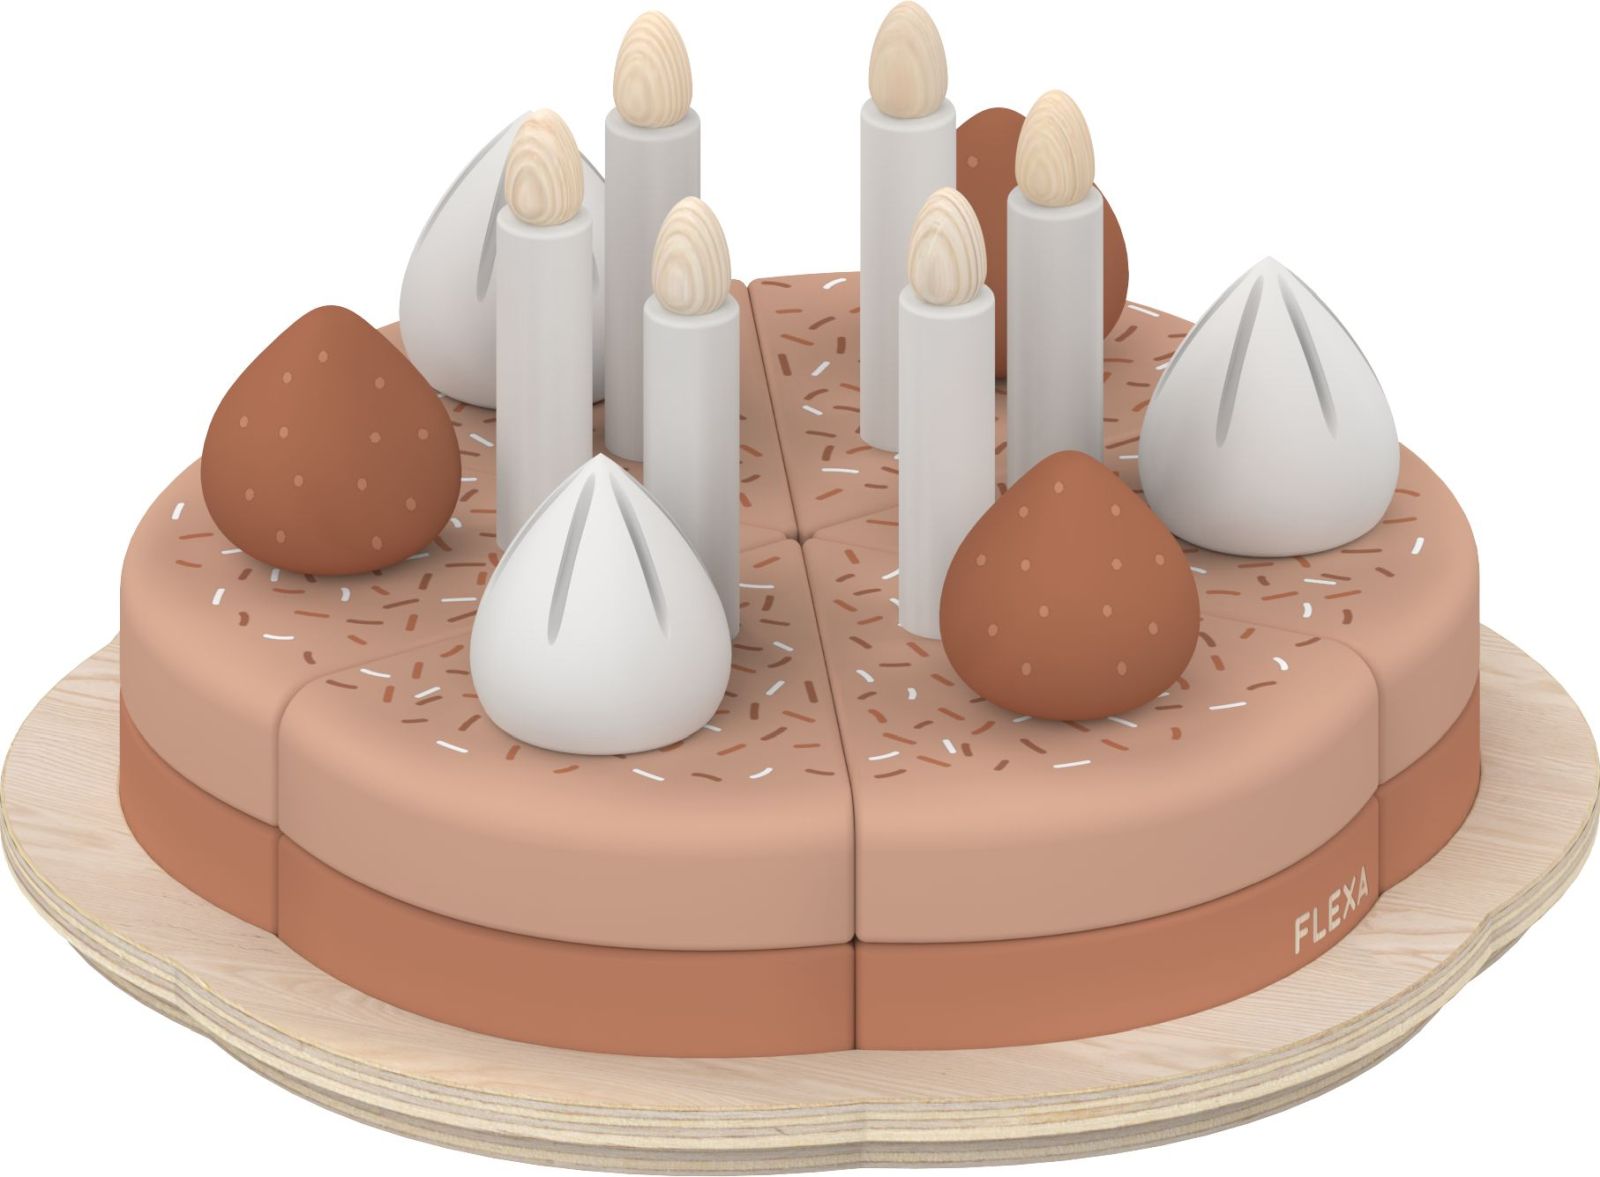 Flexa Play Dětský dřevěný narozeninový dort